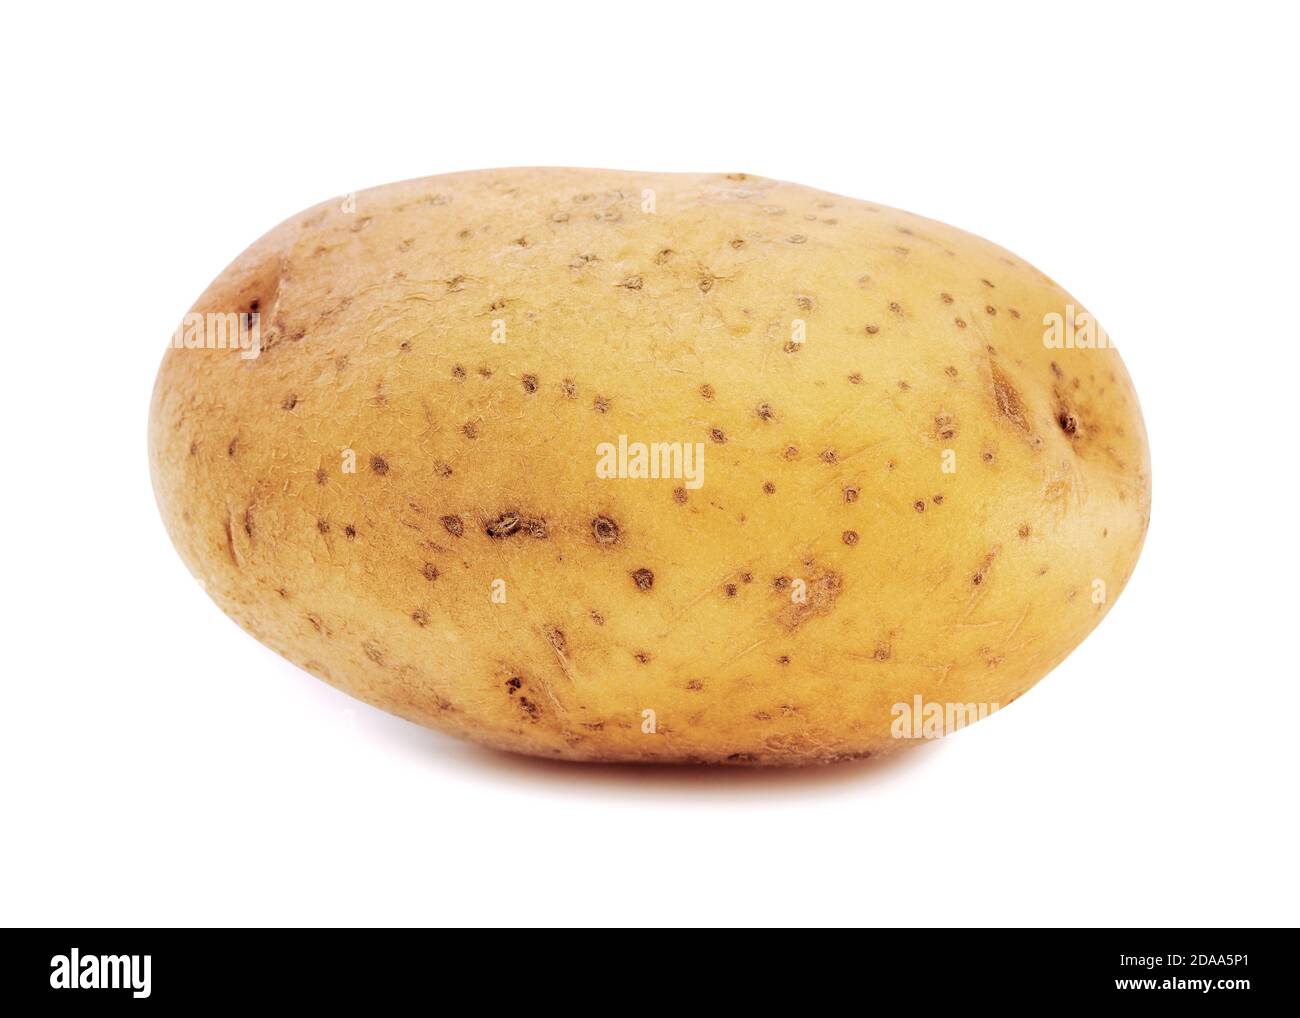 Potato on a White Background Stock Photo